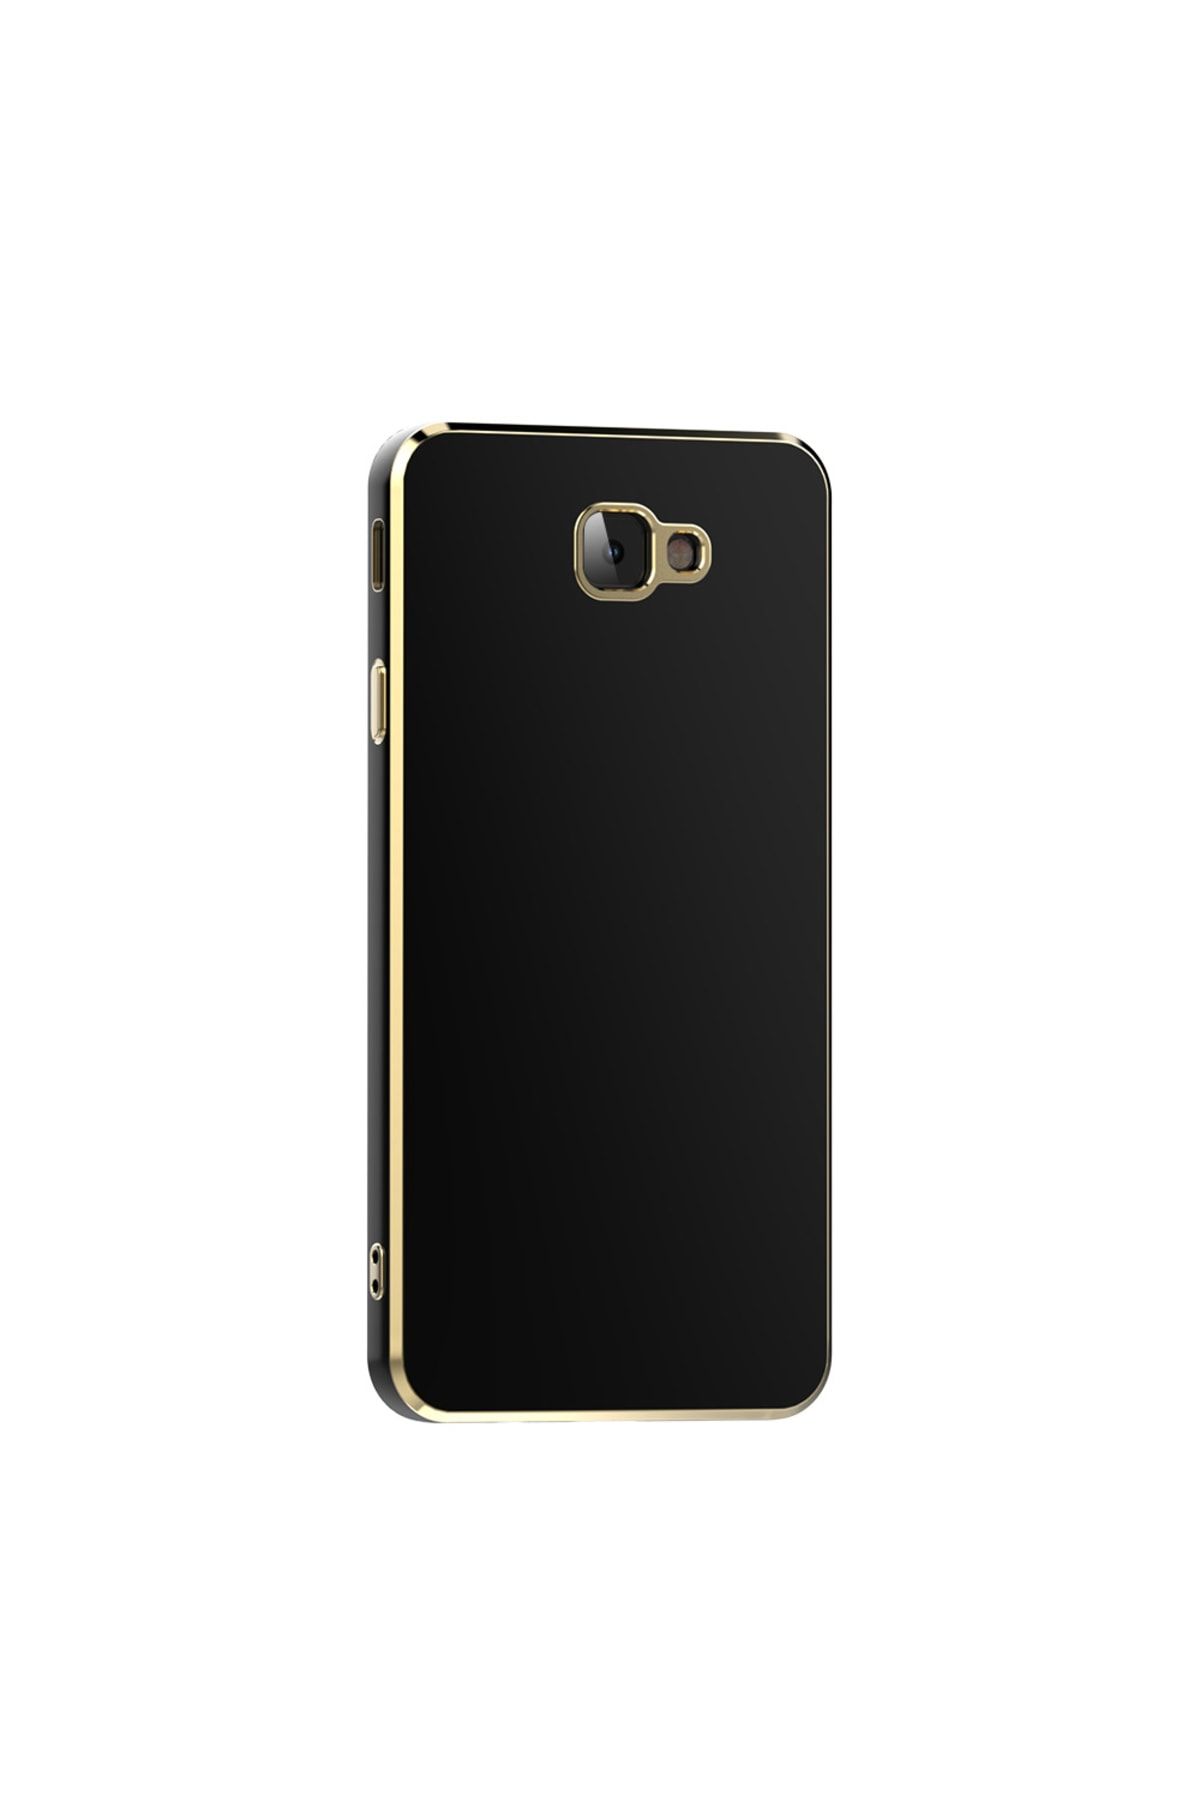 Fibaks Samsung Galaxy J7 Prime Kılıf Parlak Kenarlı Altın Işlemeli Kamera Korumalı Kapak